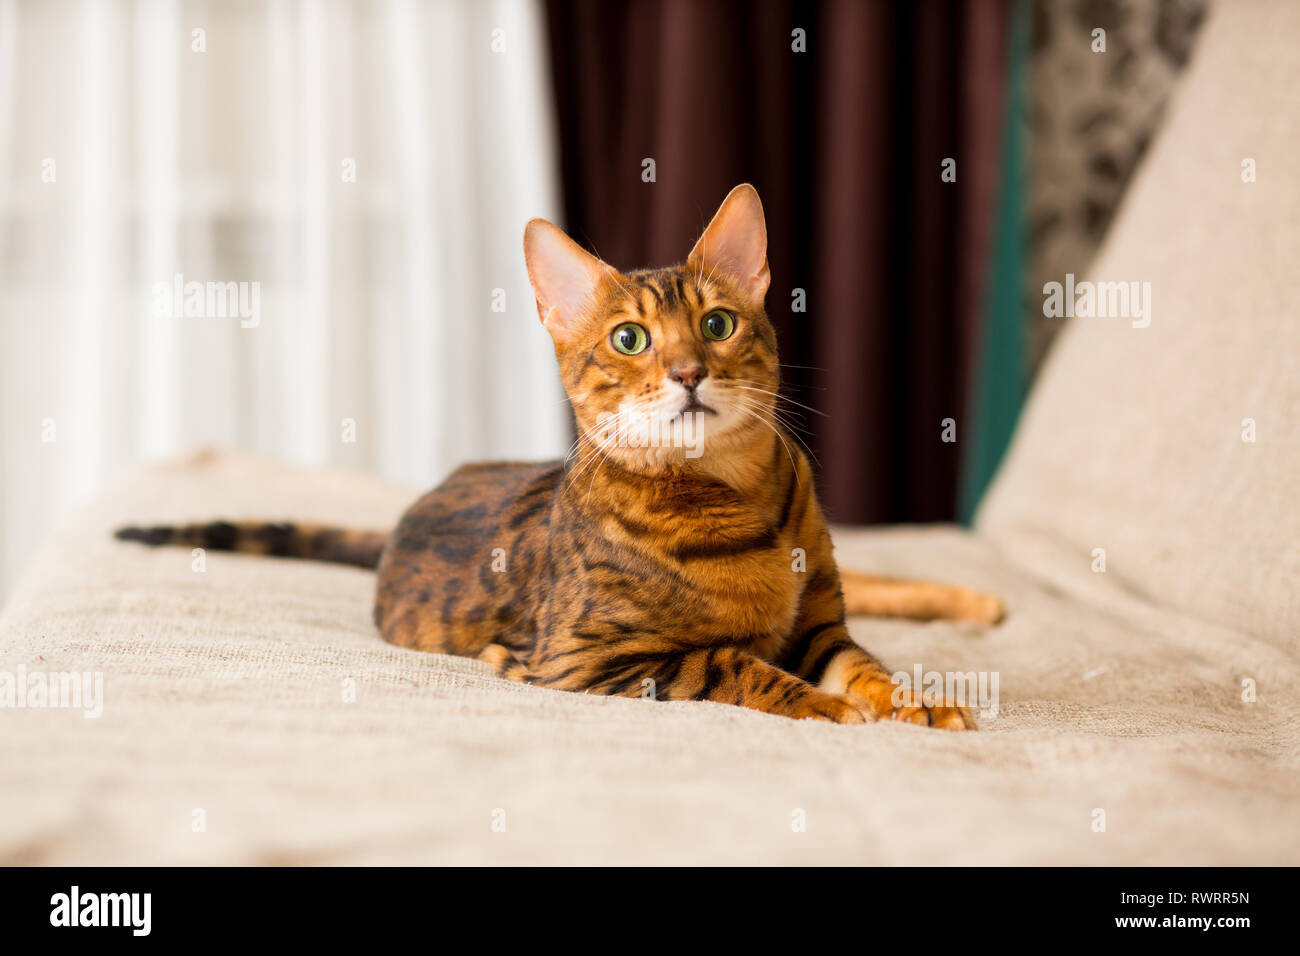 Un adulto gatto bengalese giace sul lettino stretching le sue zampe Foto Stock